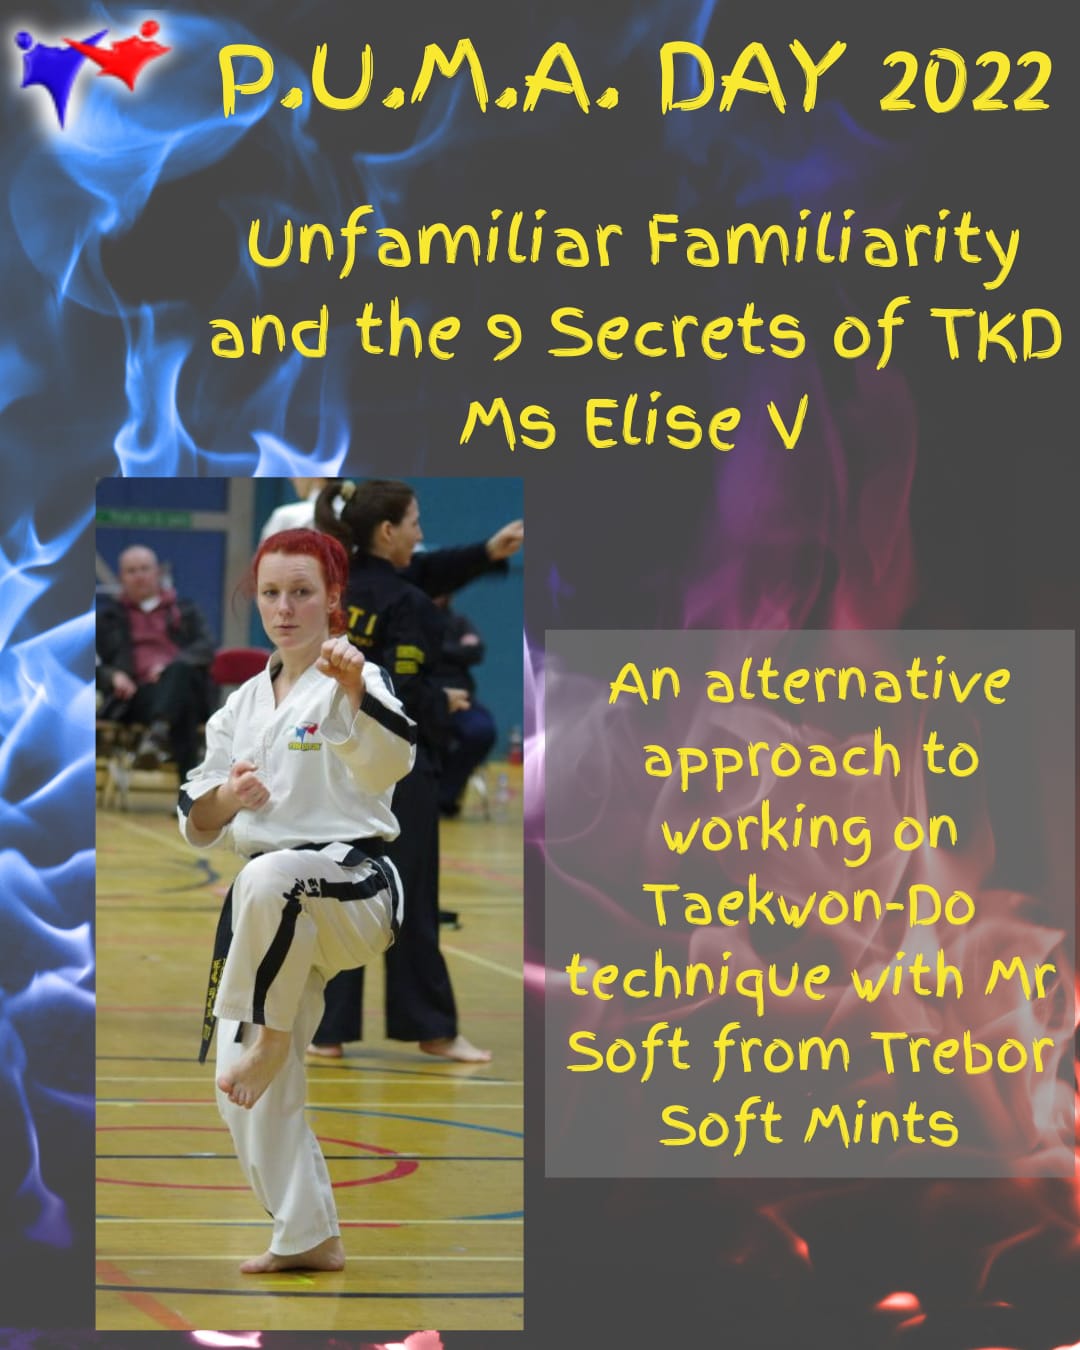 PUMA Day Unfamiliar familiarity and the 9 secrets of taekwondo with Ms Elise